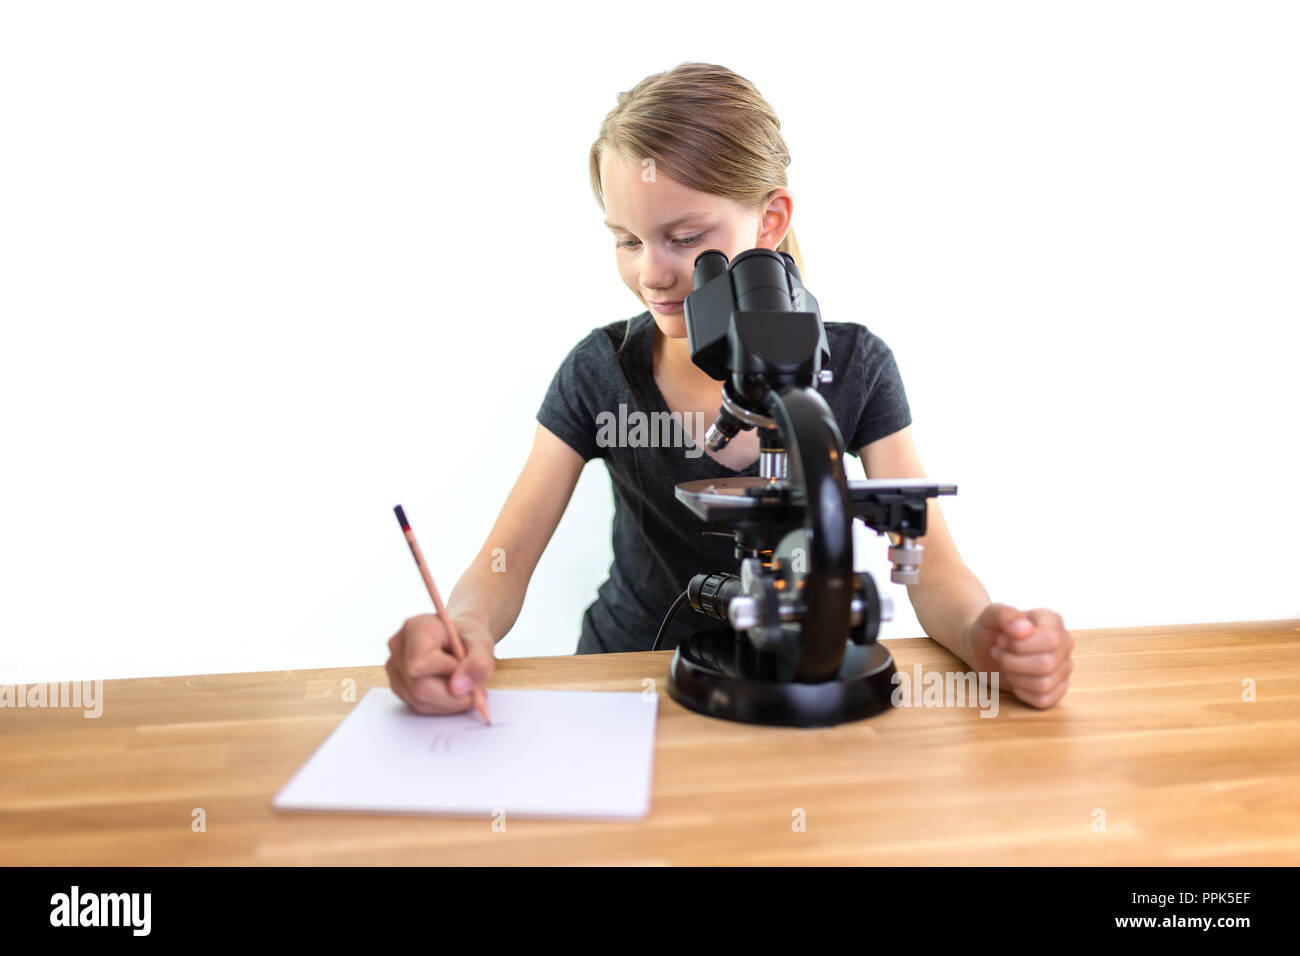 Une petite fille de 9 ans cherche dans un oculaire d'un microscope et tire ses observations sur une feuille de papier. Contre isolé sur fond blanc Banque D'Images